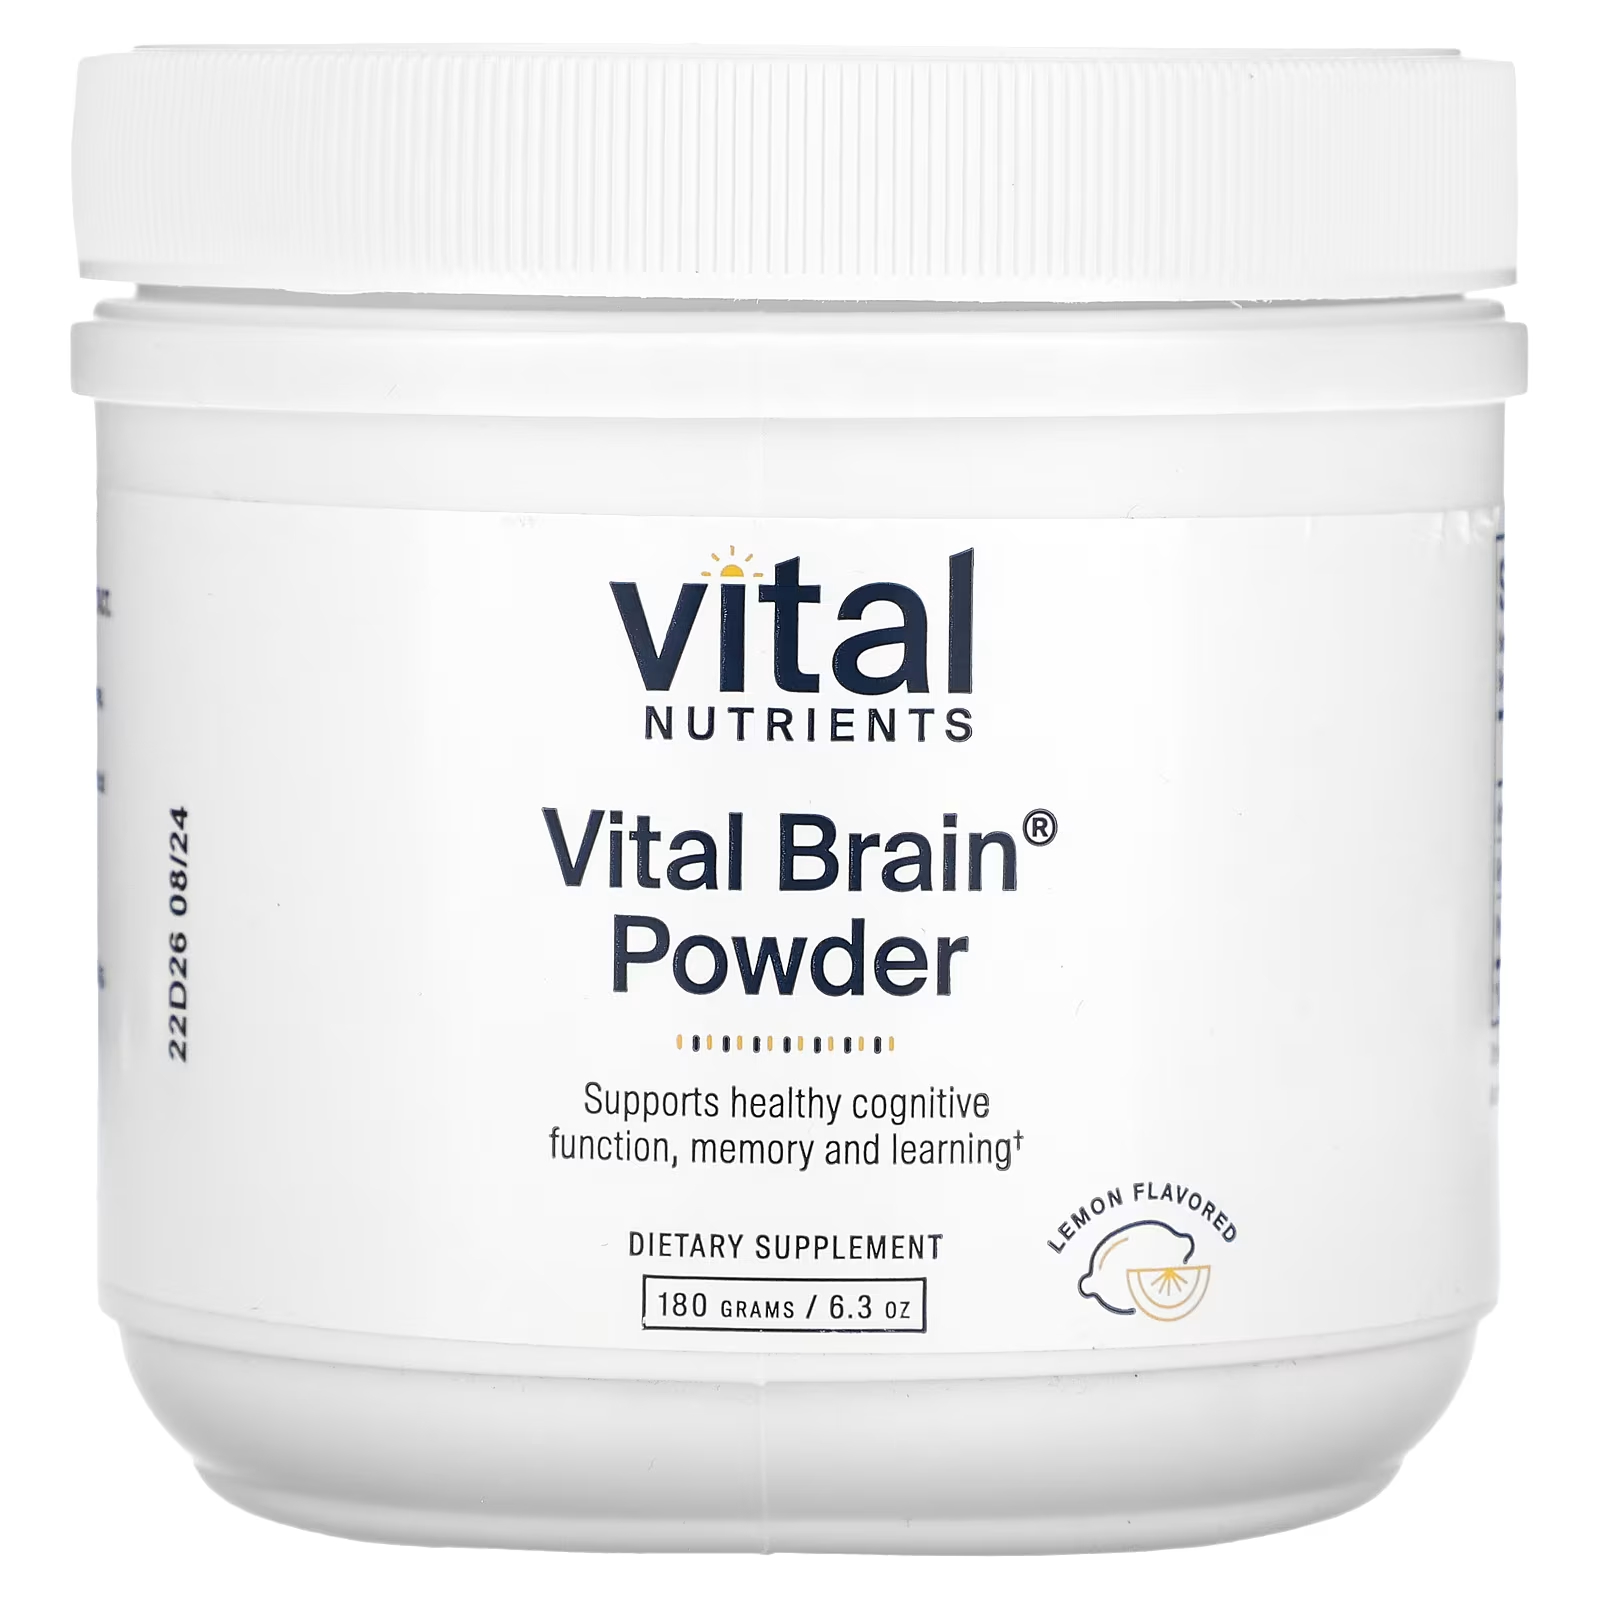 Пищевая добавка Vital Nutrients Vital Brain Powder со вкусом лимона, 180 г